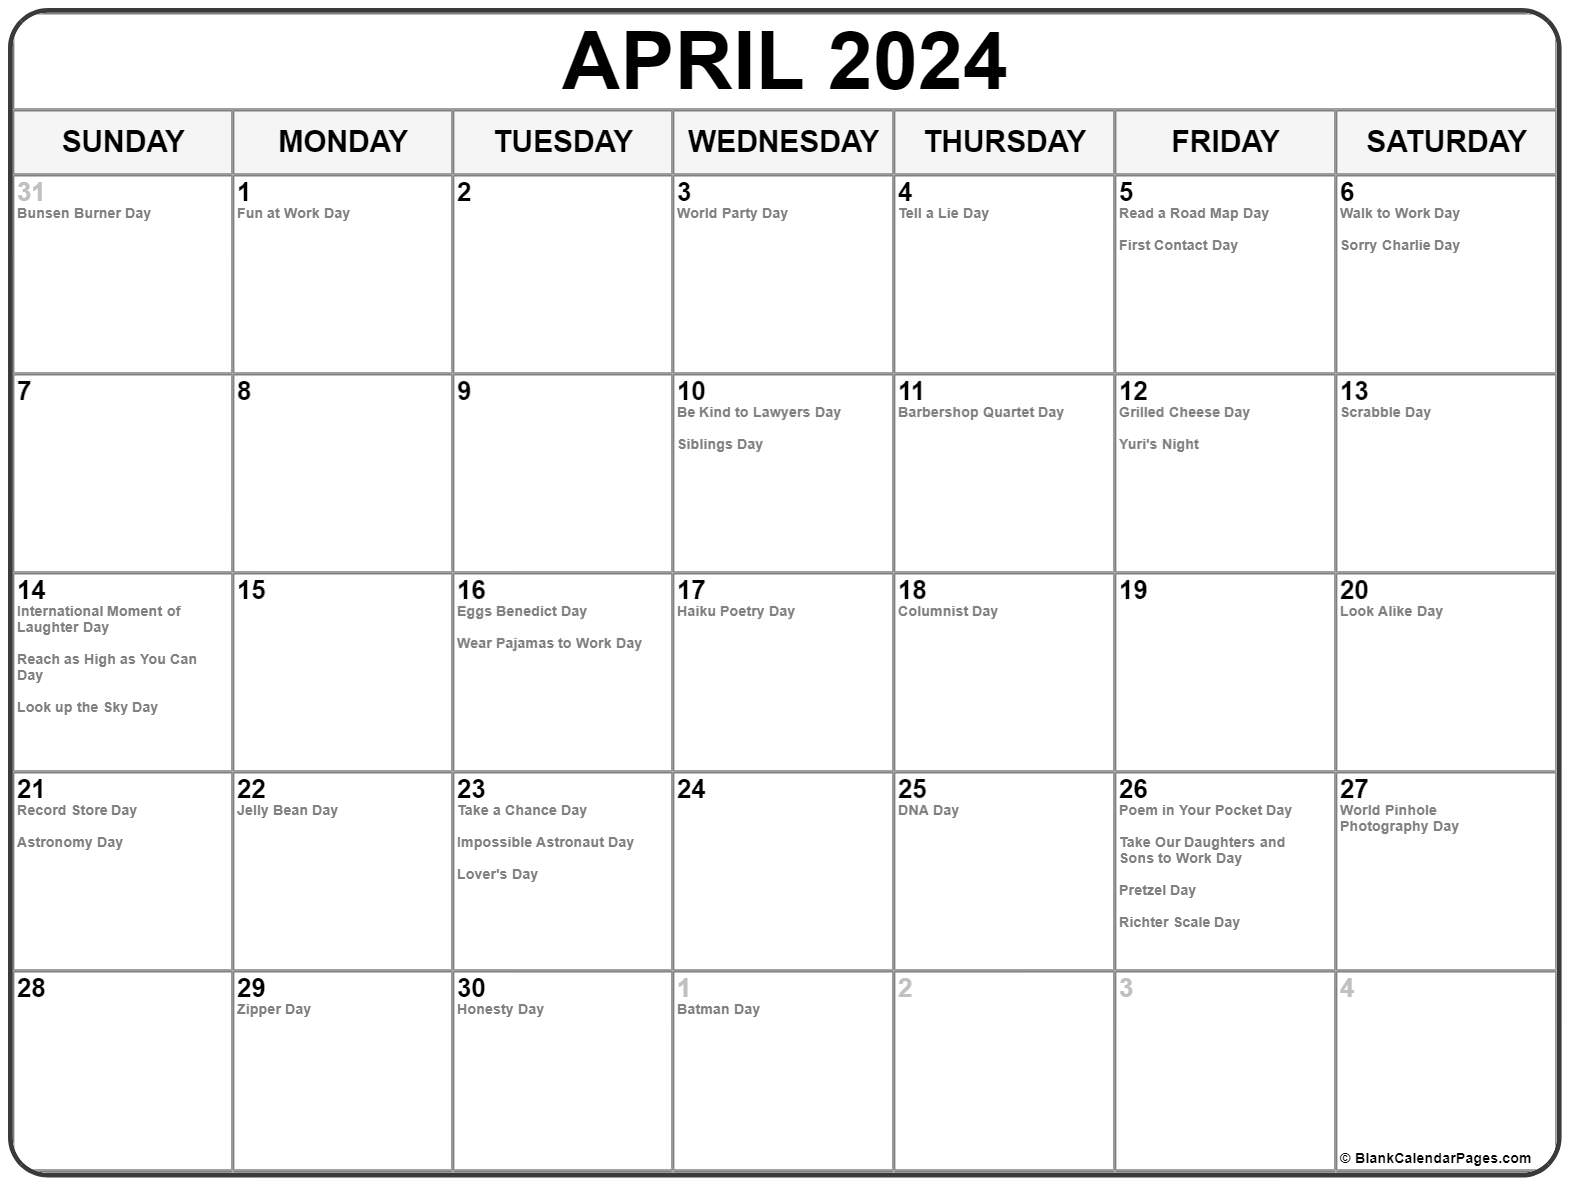 April 2022 calendar with holidays